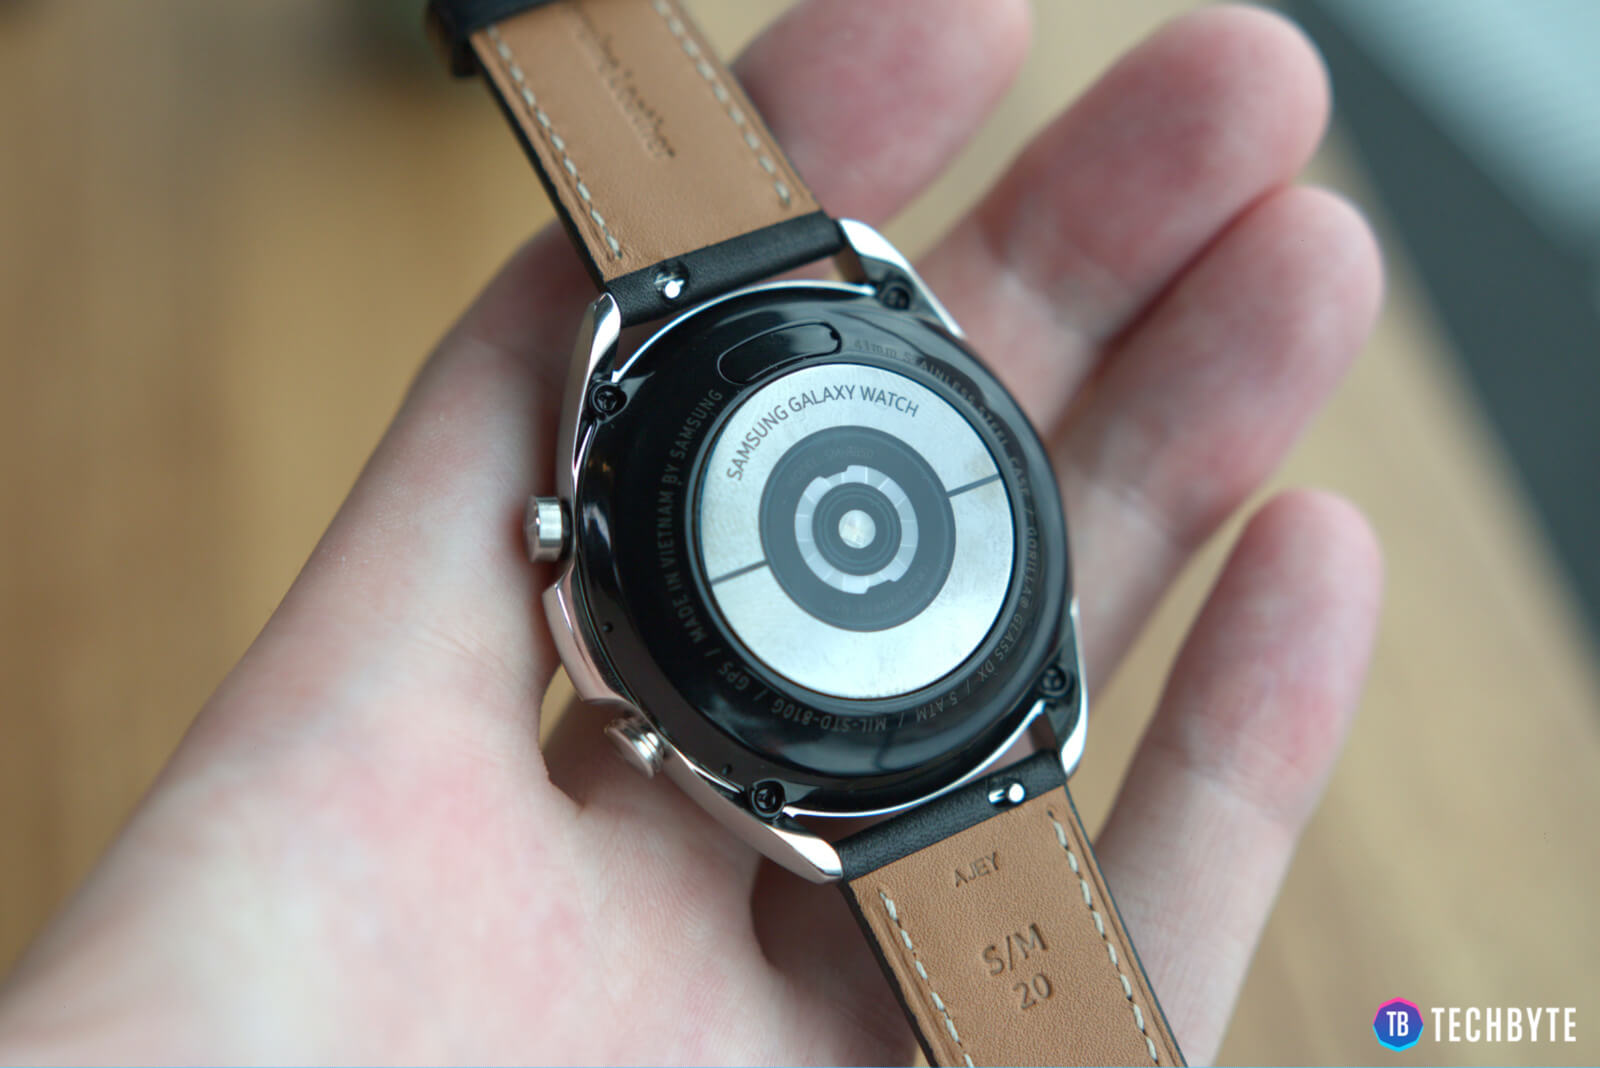 Galaxy watch 3